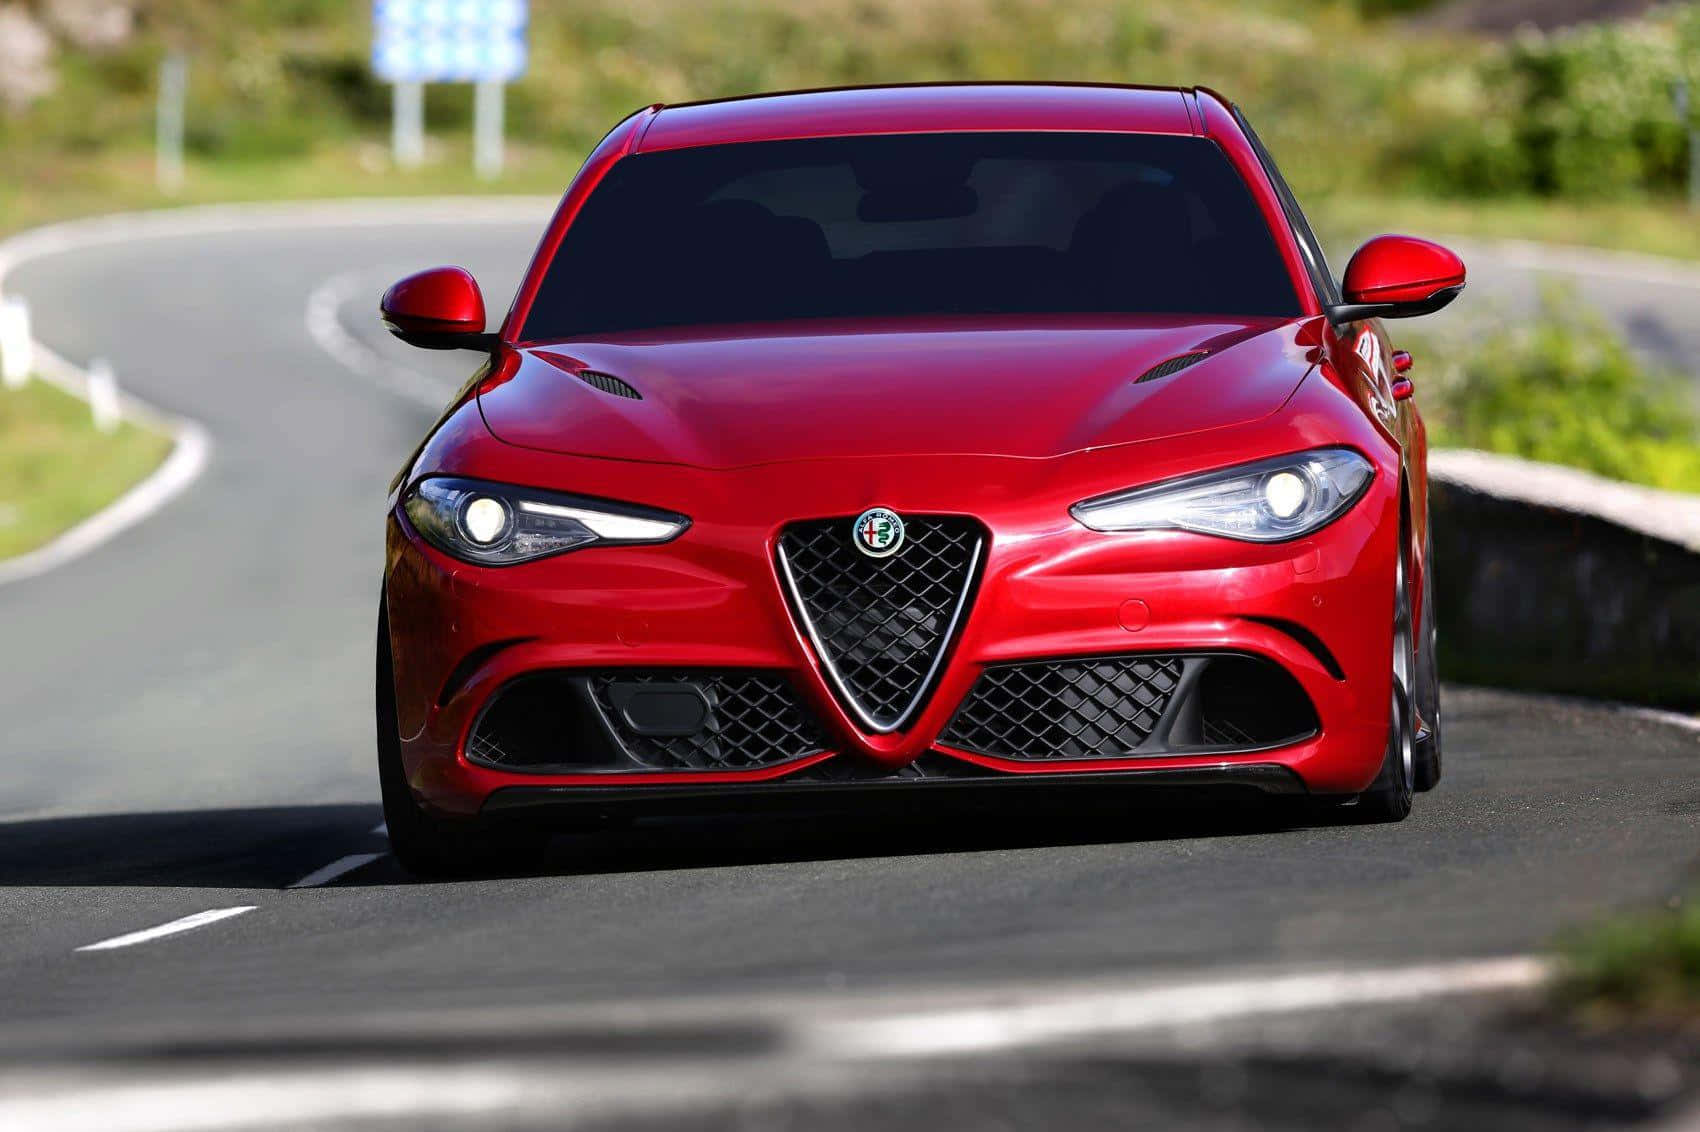 The Iconic Alfa Romeo Giulia